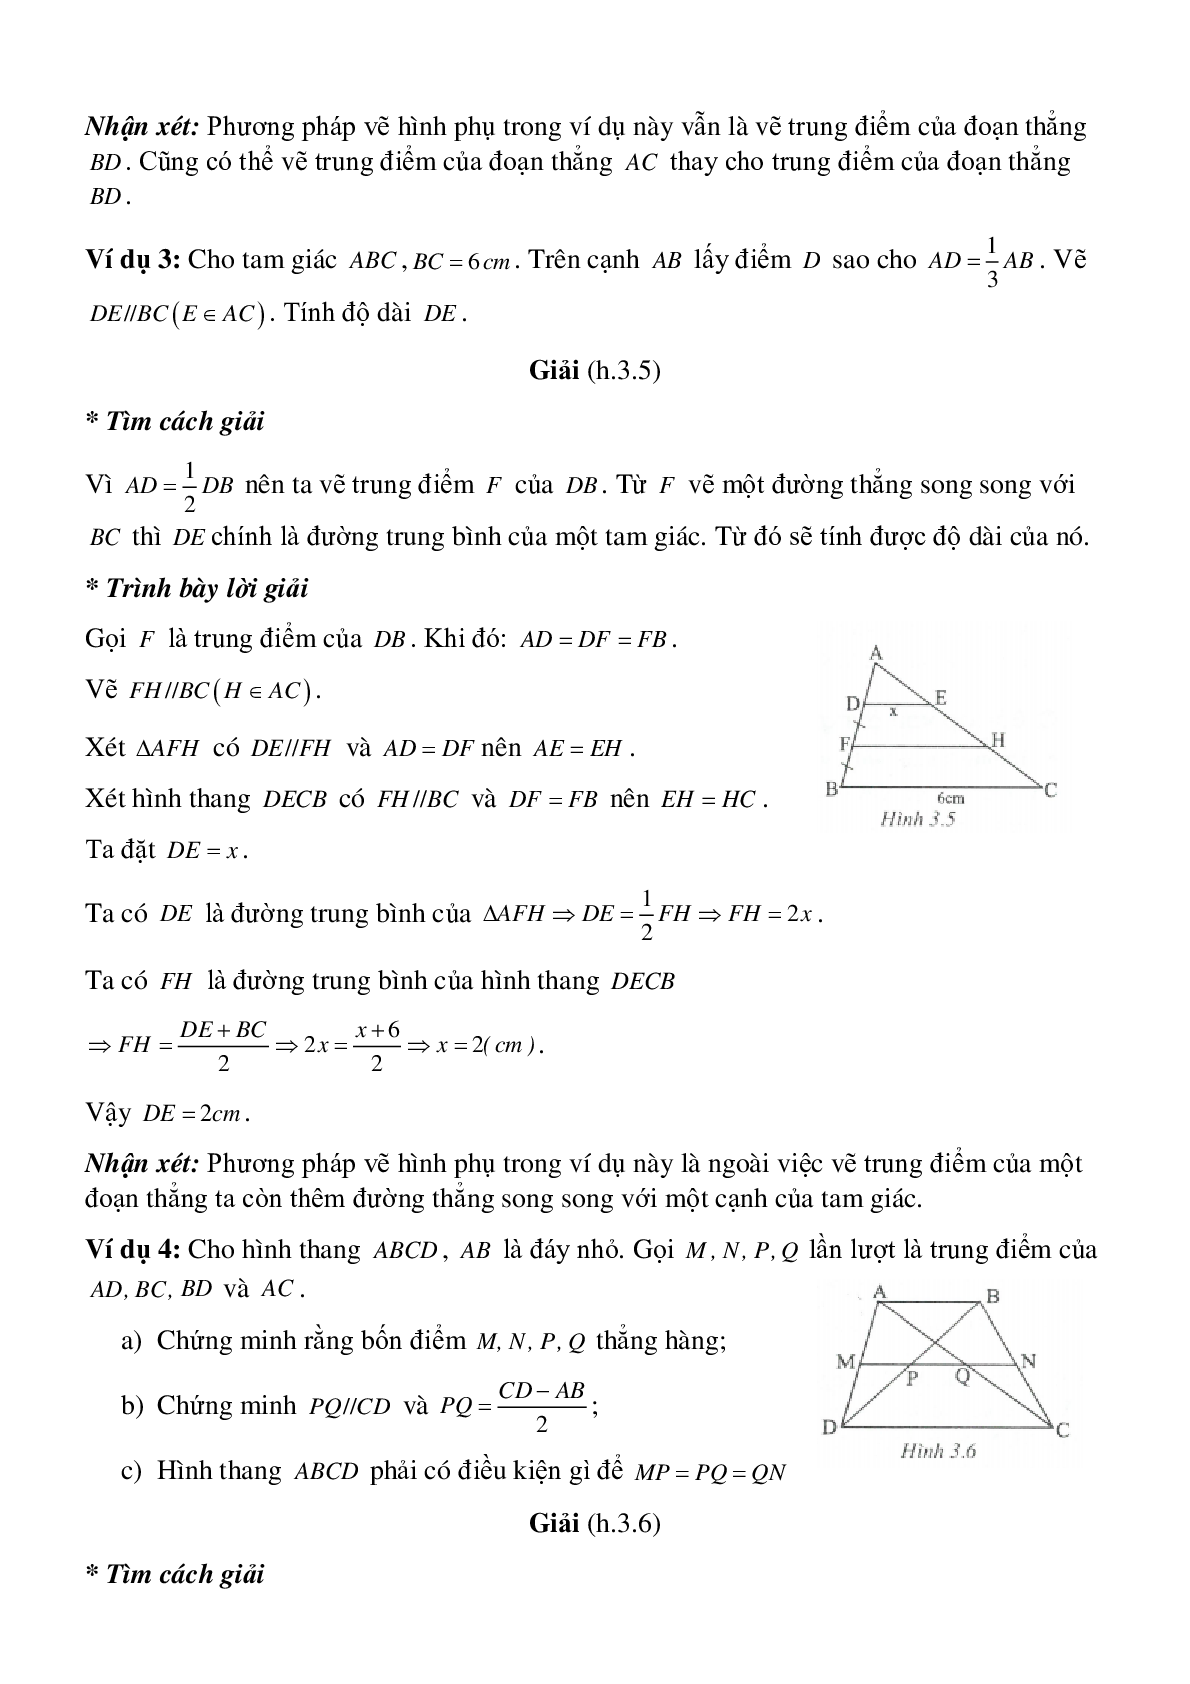 Đường trung bình của tam giác, của hình thang (trang 3)